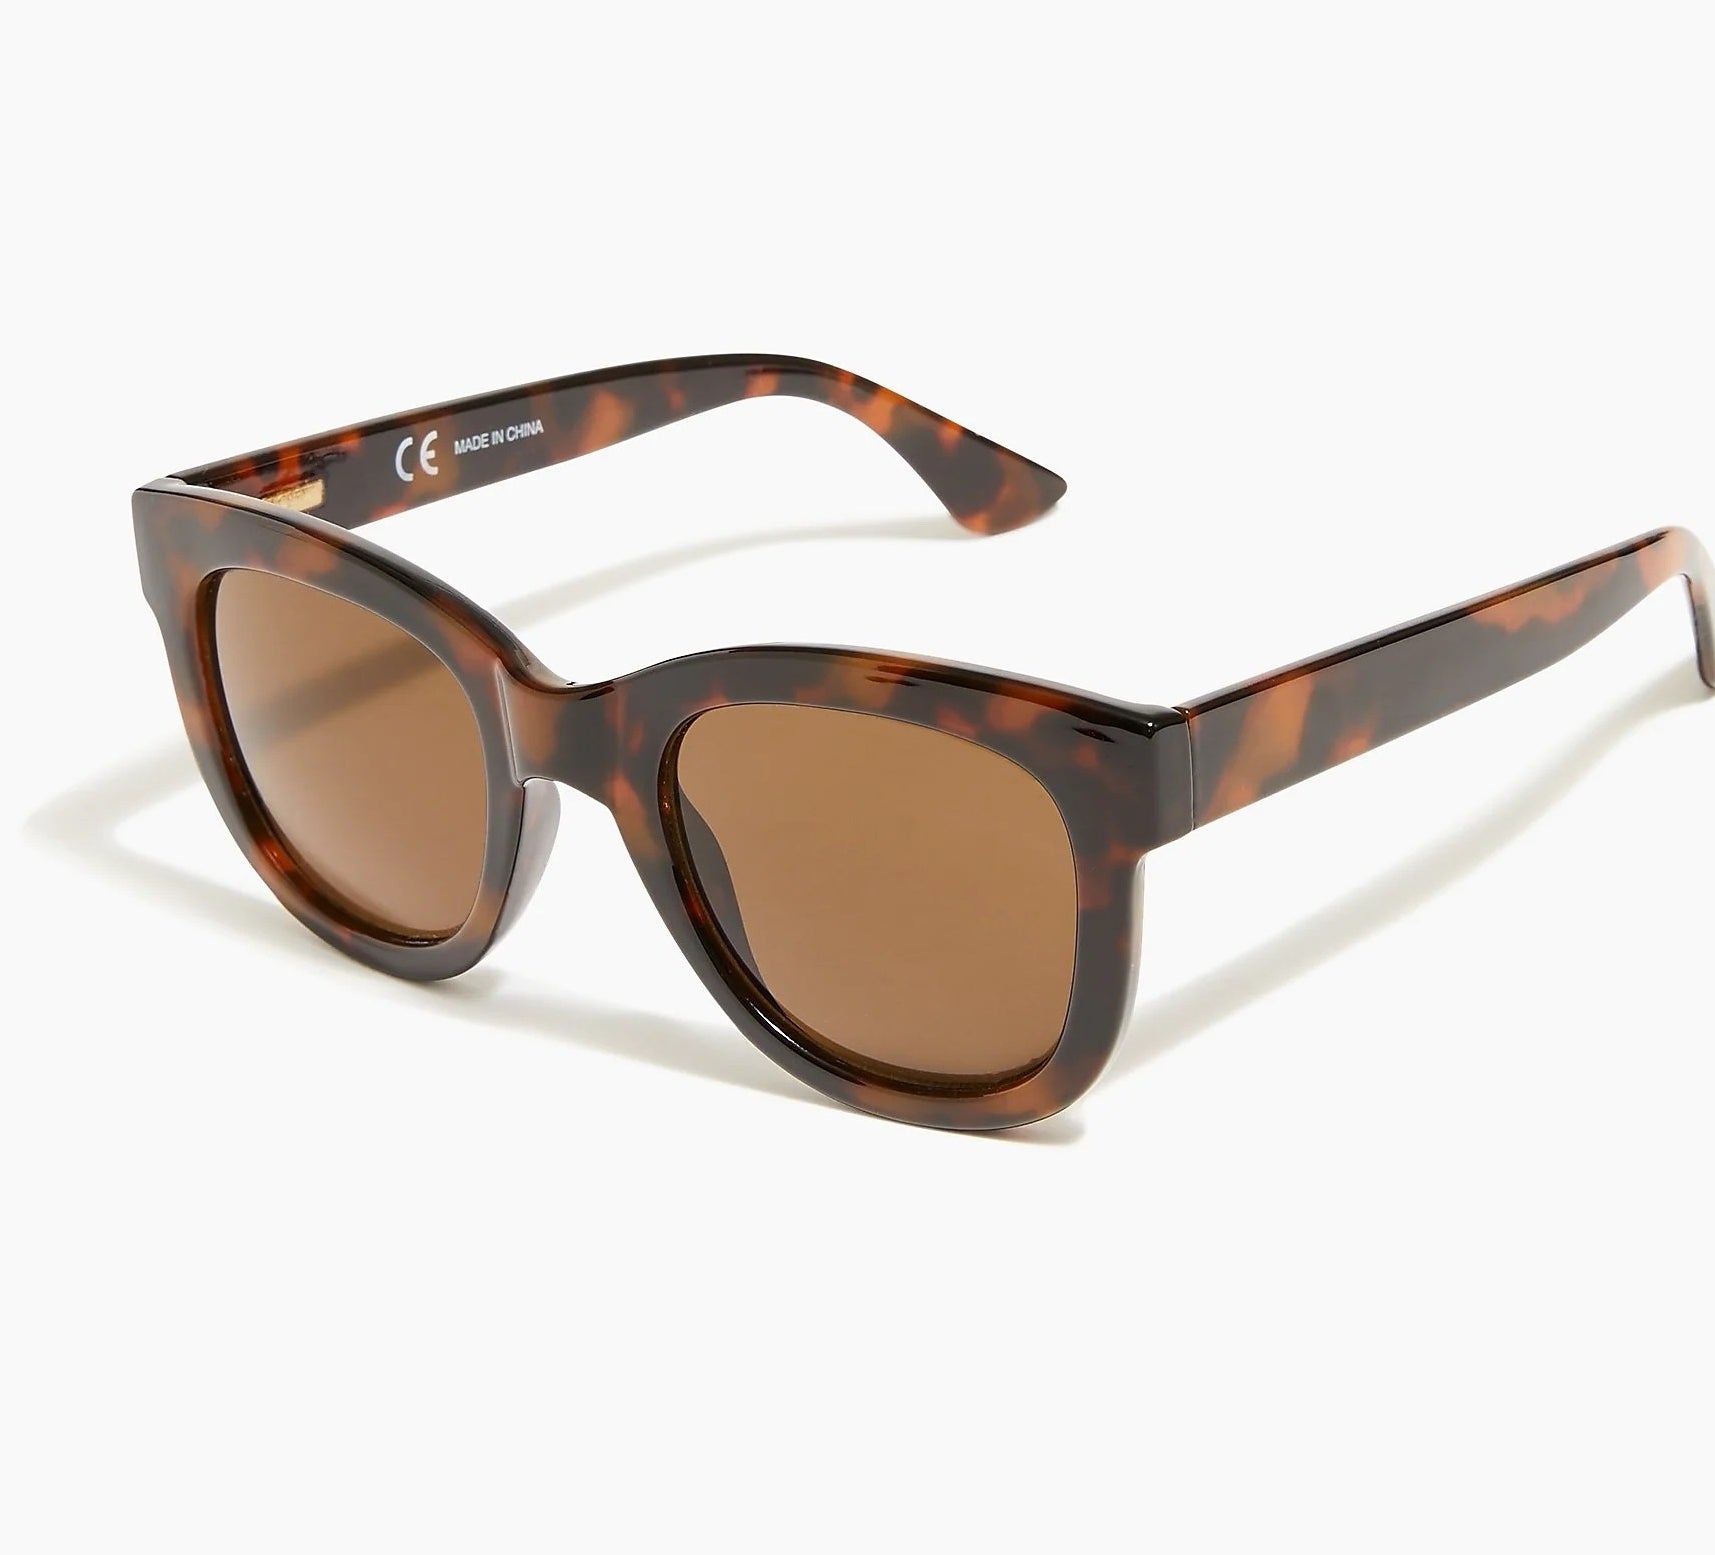 a pair of tortoise framed sunglasses